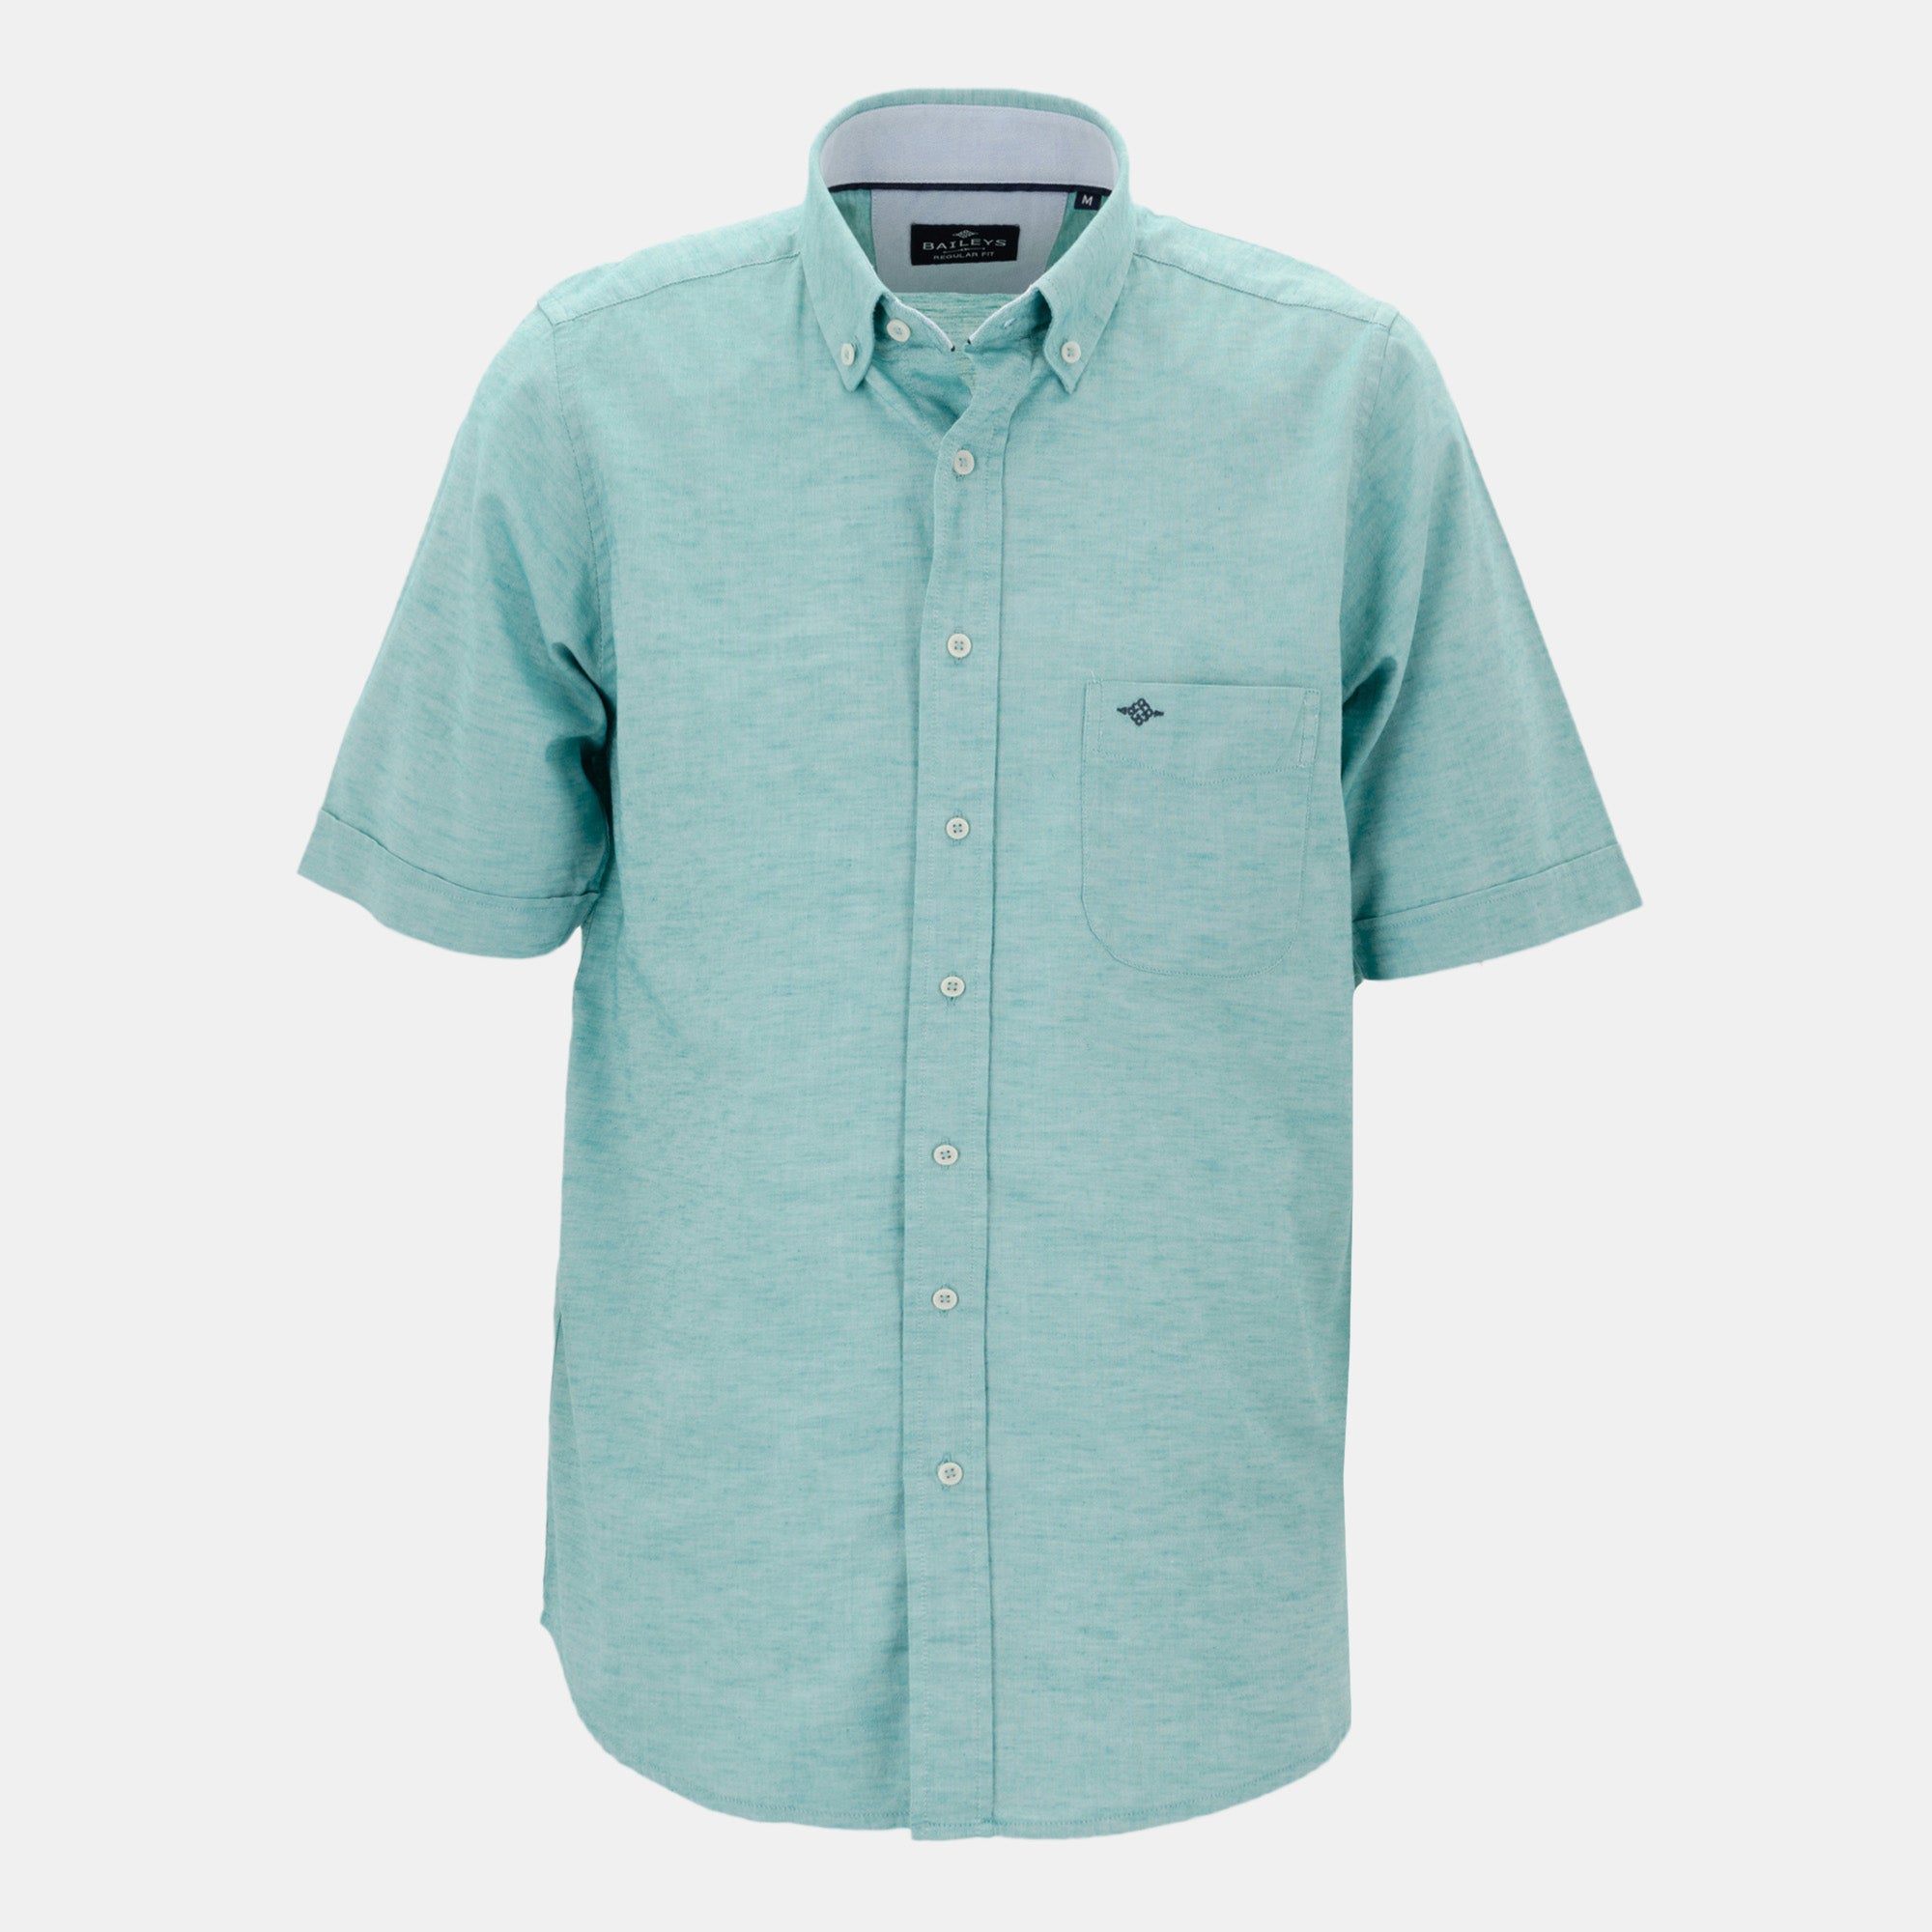 Short sleeve plain shirt 216680